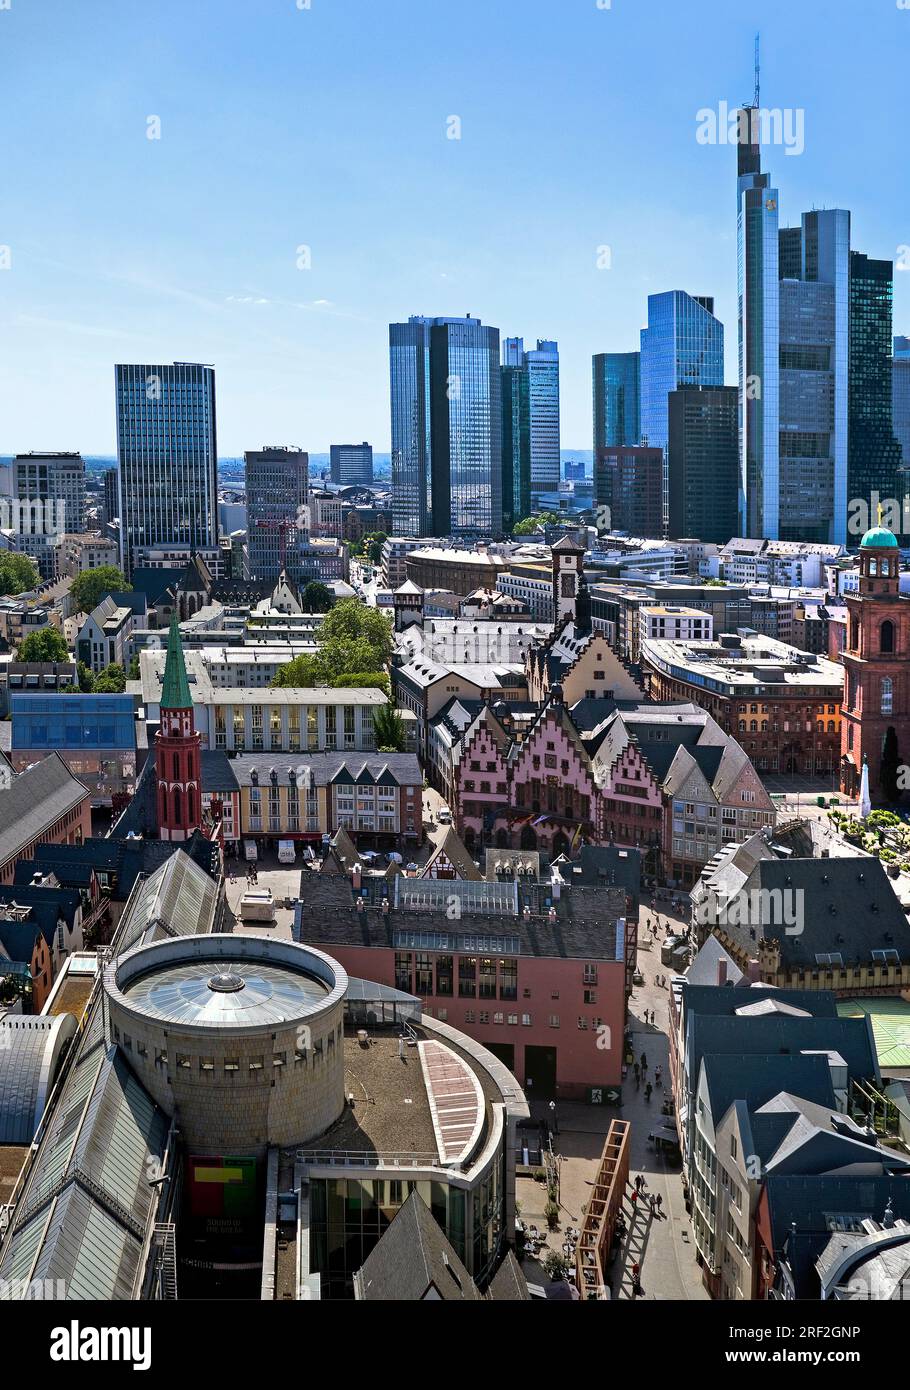 Vista del quartiere bancario con la città vecchia, Roemer e la chiesa di San Paolo, Germania, Assia, Francoforte sul meno Foto Stock